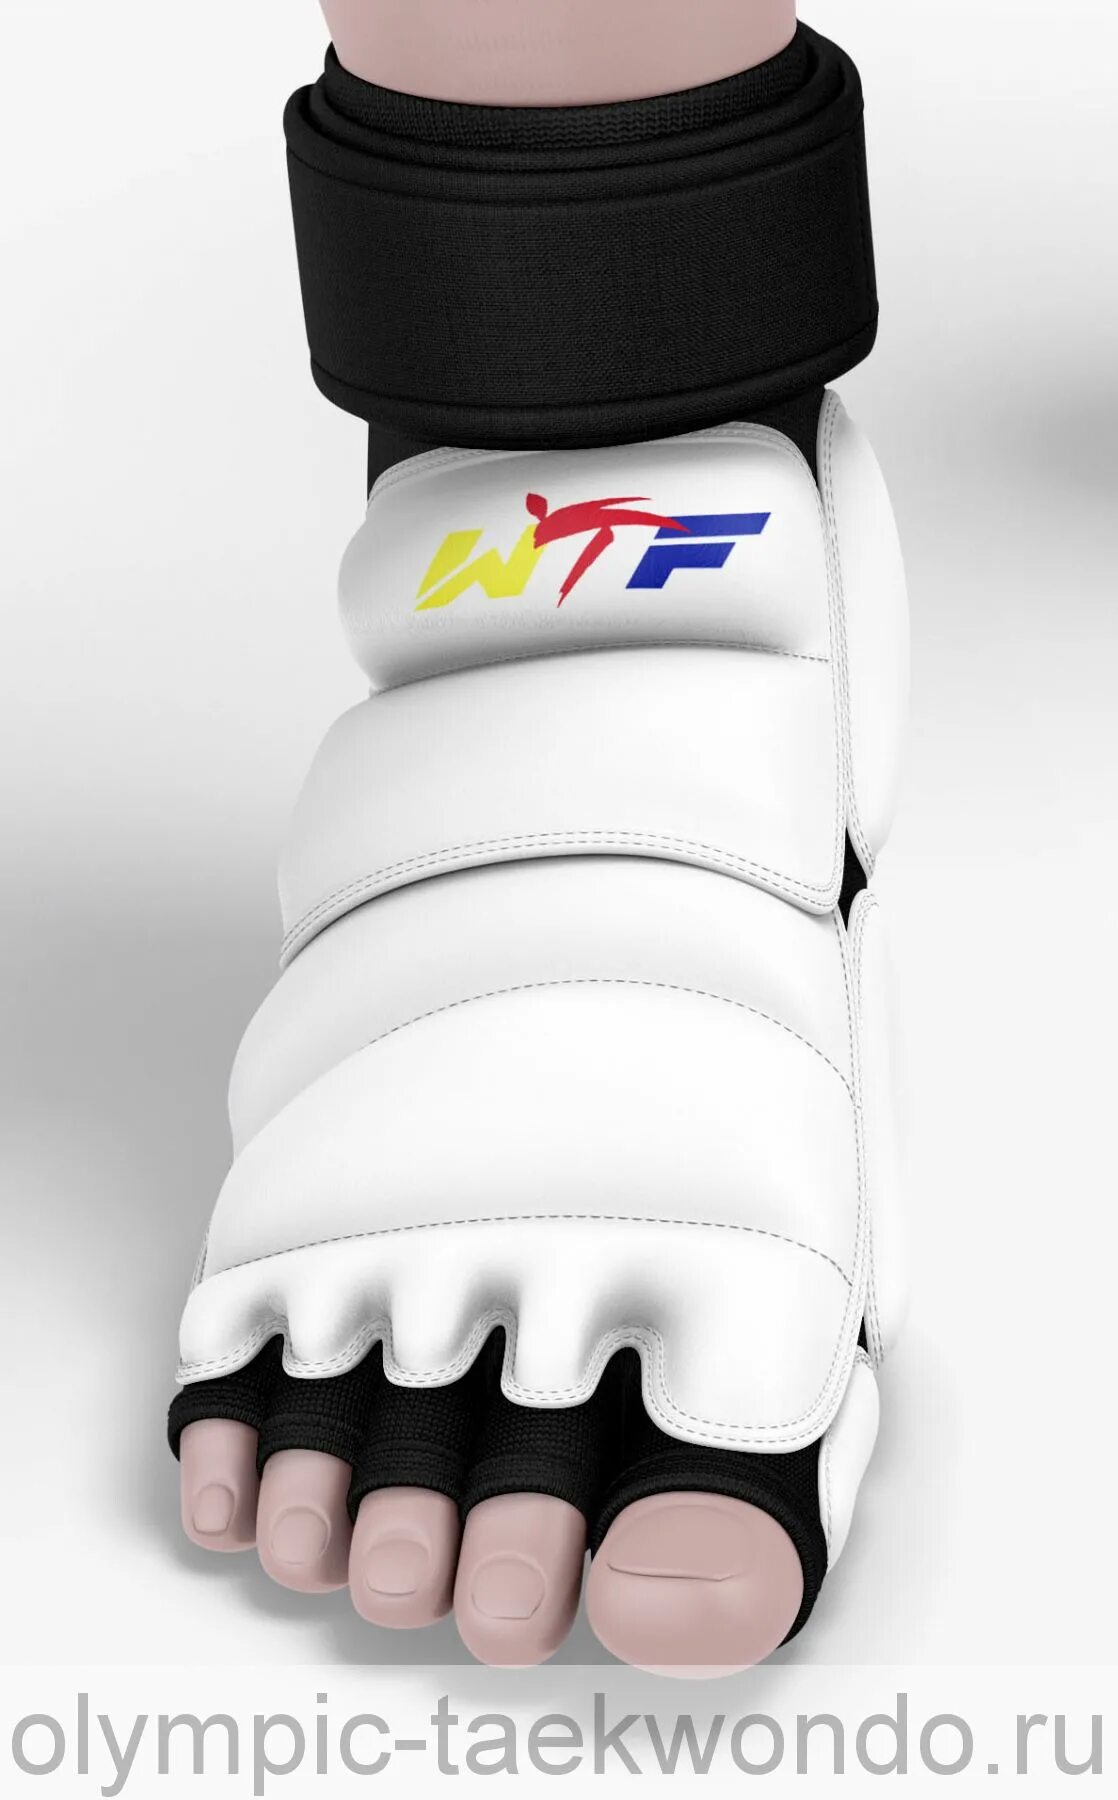 Защита стопы для тхэквондо ВТФ. Защита стопы для тхэквондо WTF. Защита подъема стопы для тхэквондо adidas. Викинг тхэквондо. Стопы таэквондо